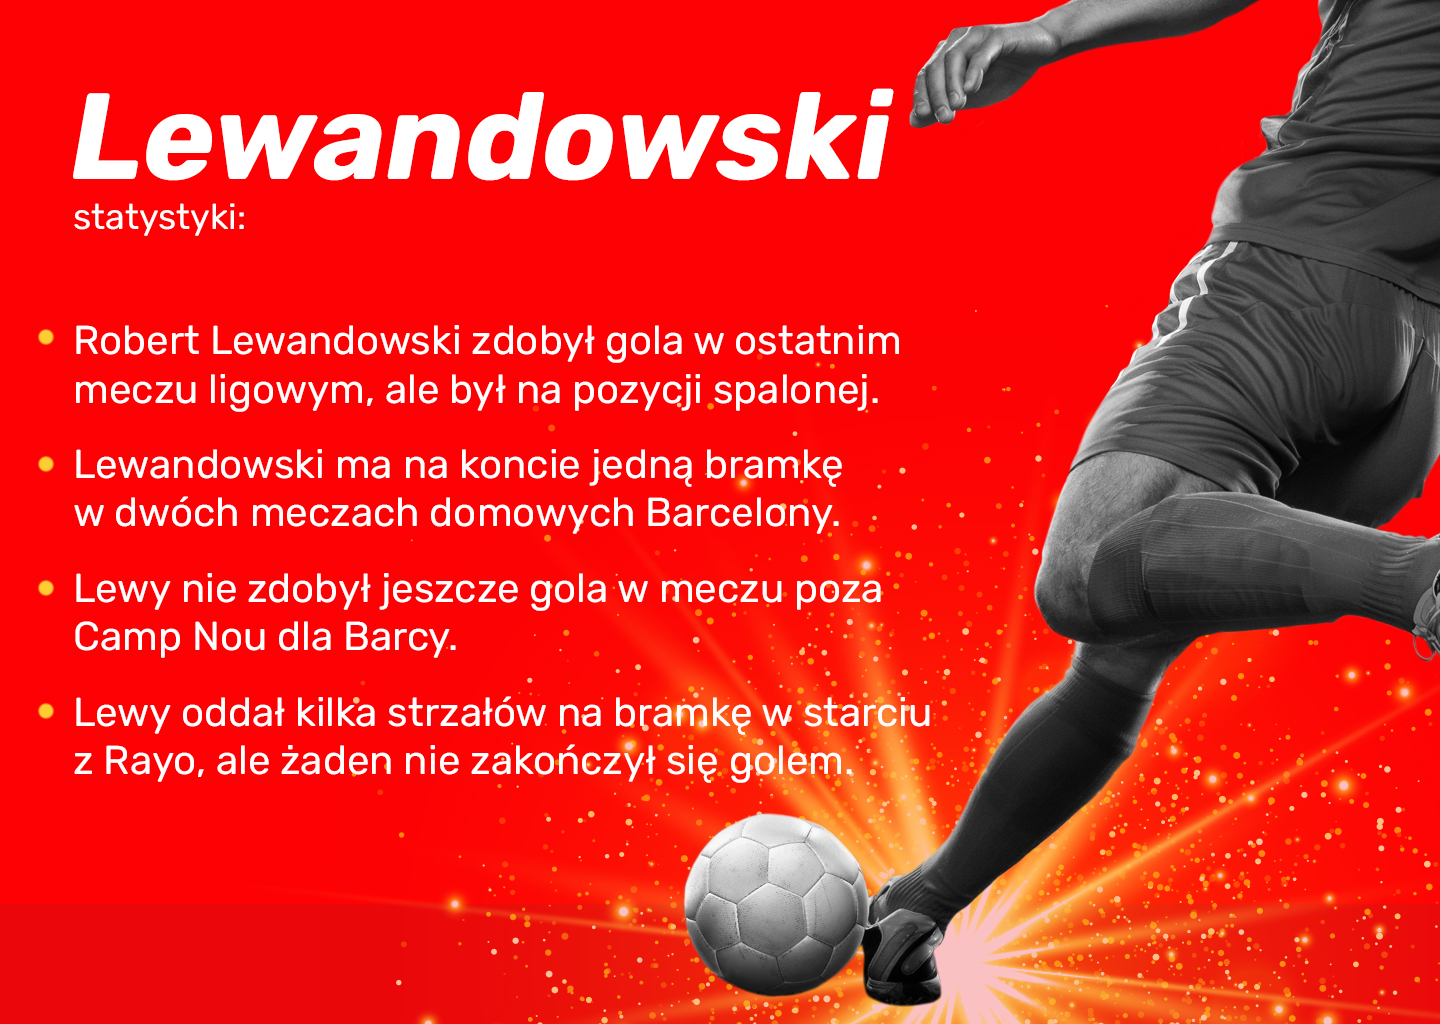 Robert Lewandowski zdobędzie gola w drugim meczu dla FC Barcelony?